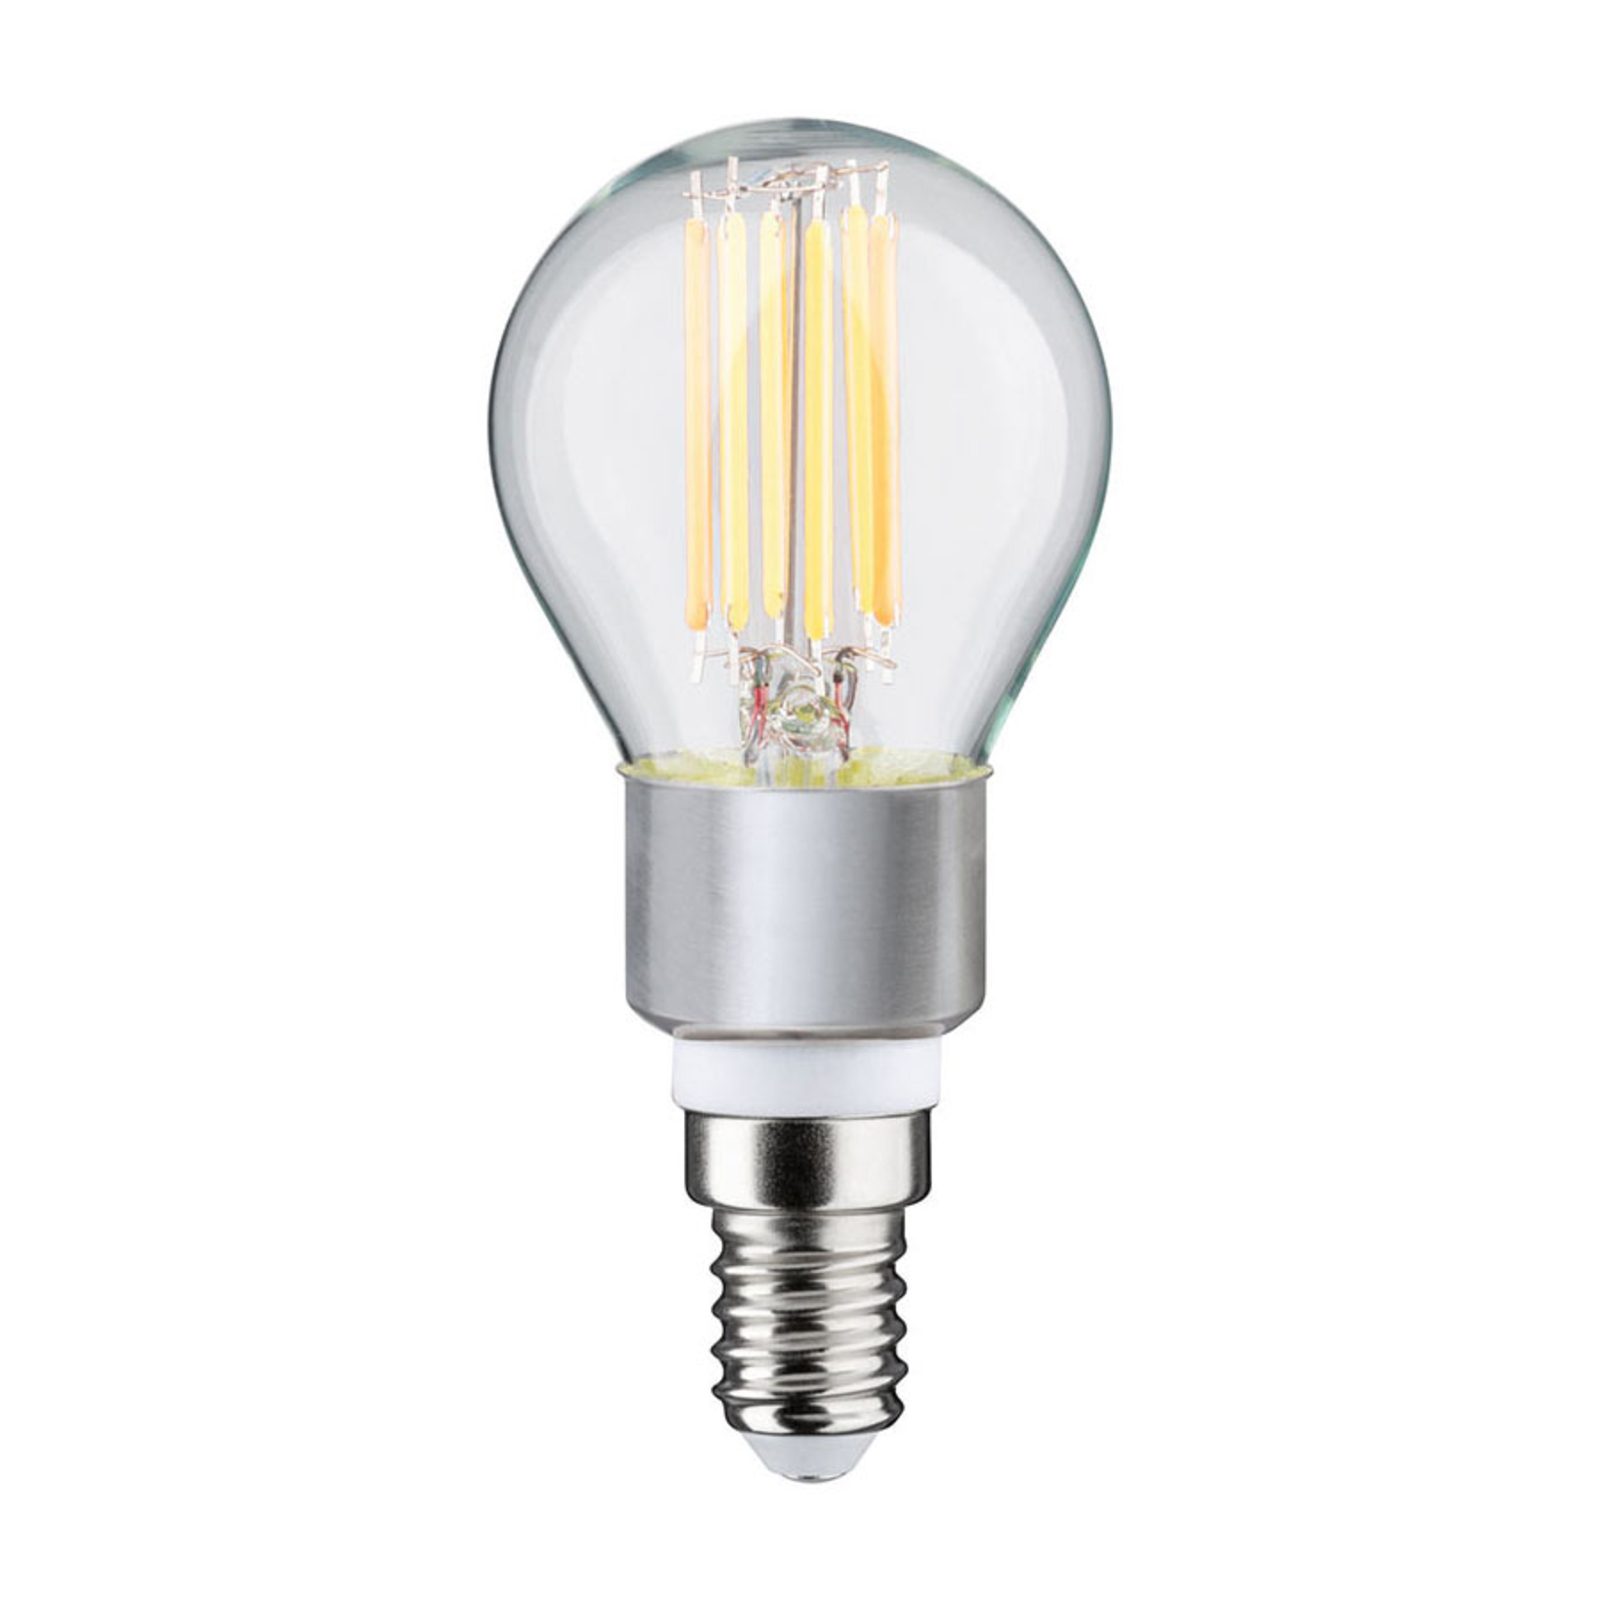 Paulmann LED-Tropfenlampe E14 5W dim to warm